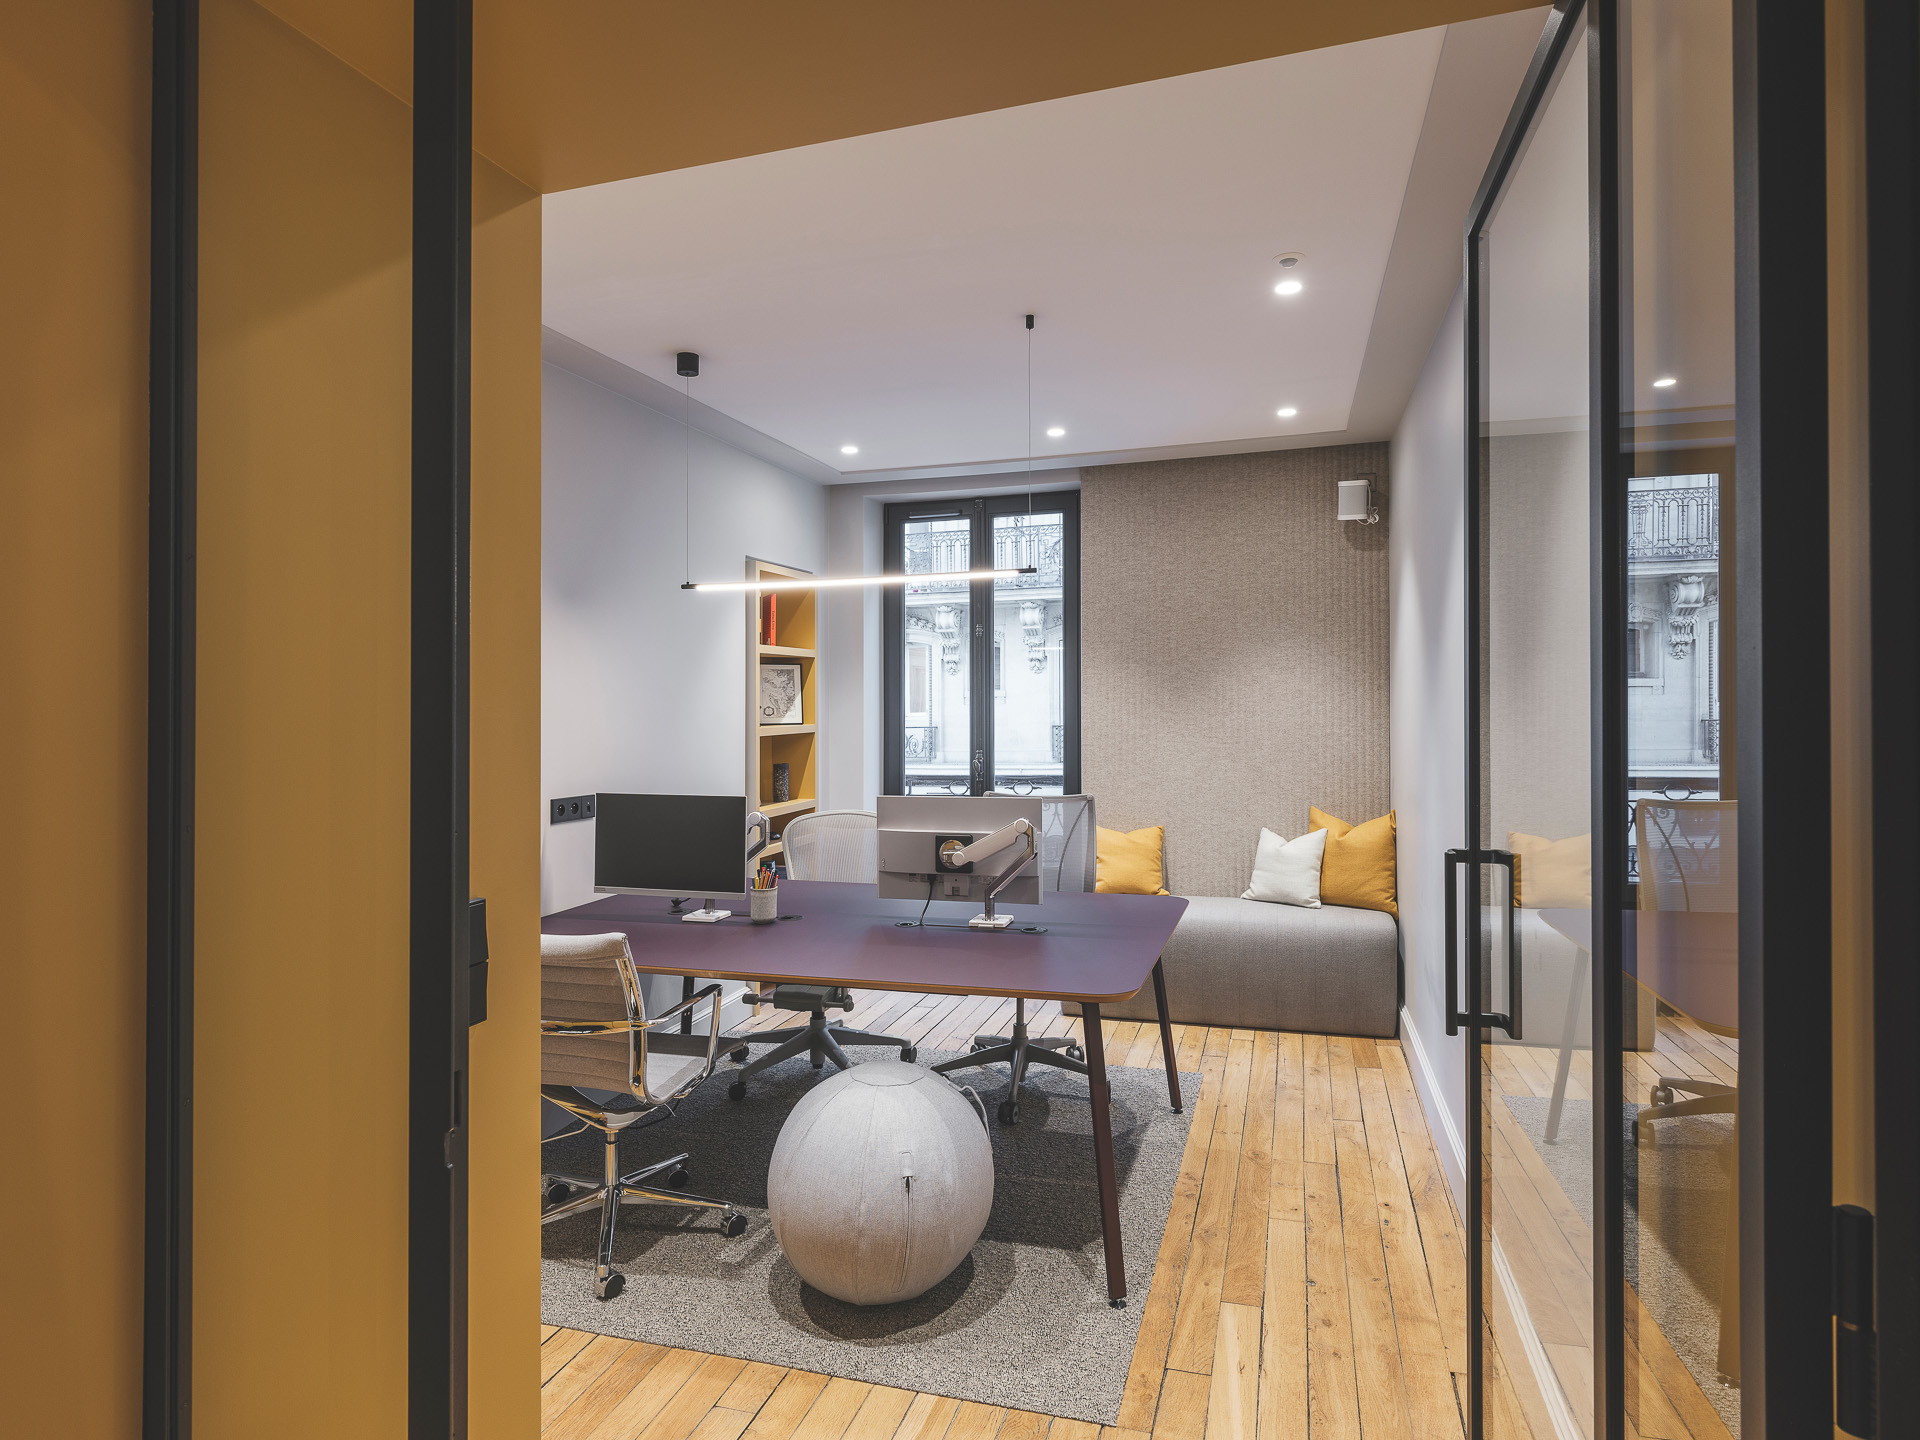 🔥 Optimisation de l'espace d'un des bureaux MAKE Office offrant une idée de mélange de couleurs. 🔥 - Bureaux dans les tons gris, jaune et violet - 2 support écrans - Bench bureau et salle de réunion - cloison acoustique ... 📸 @alexispaoli